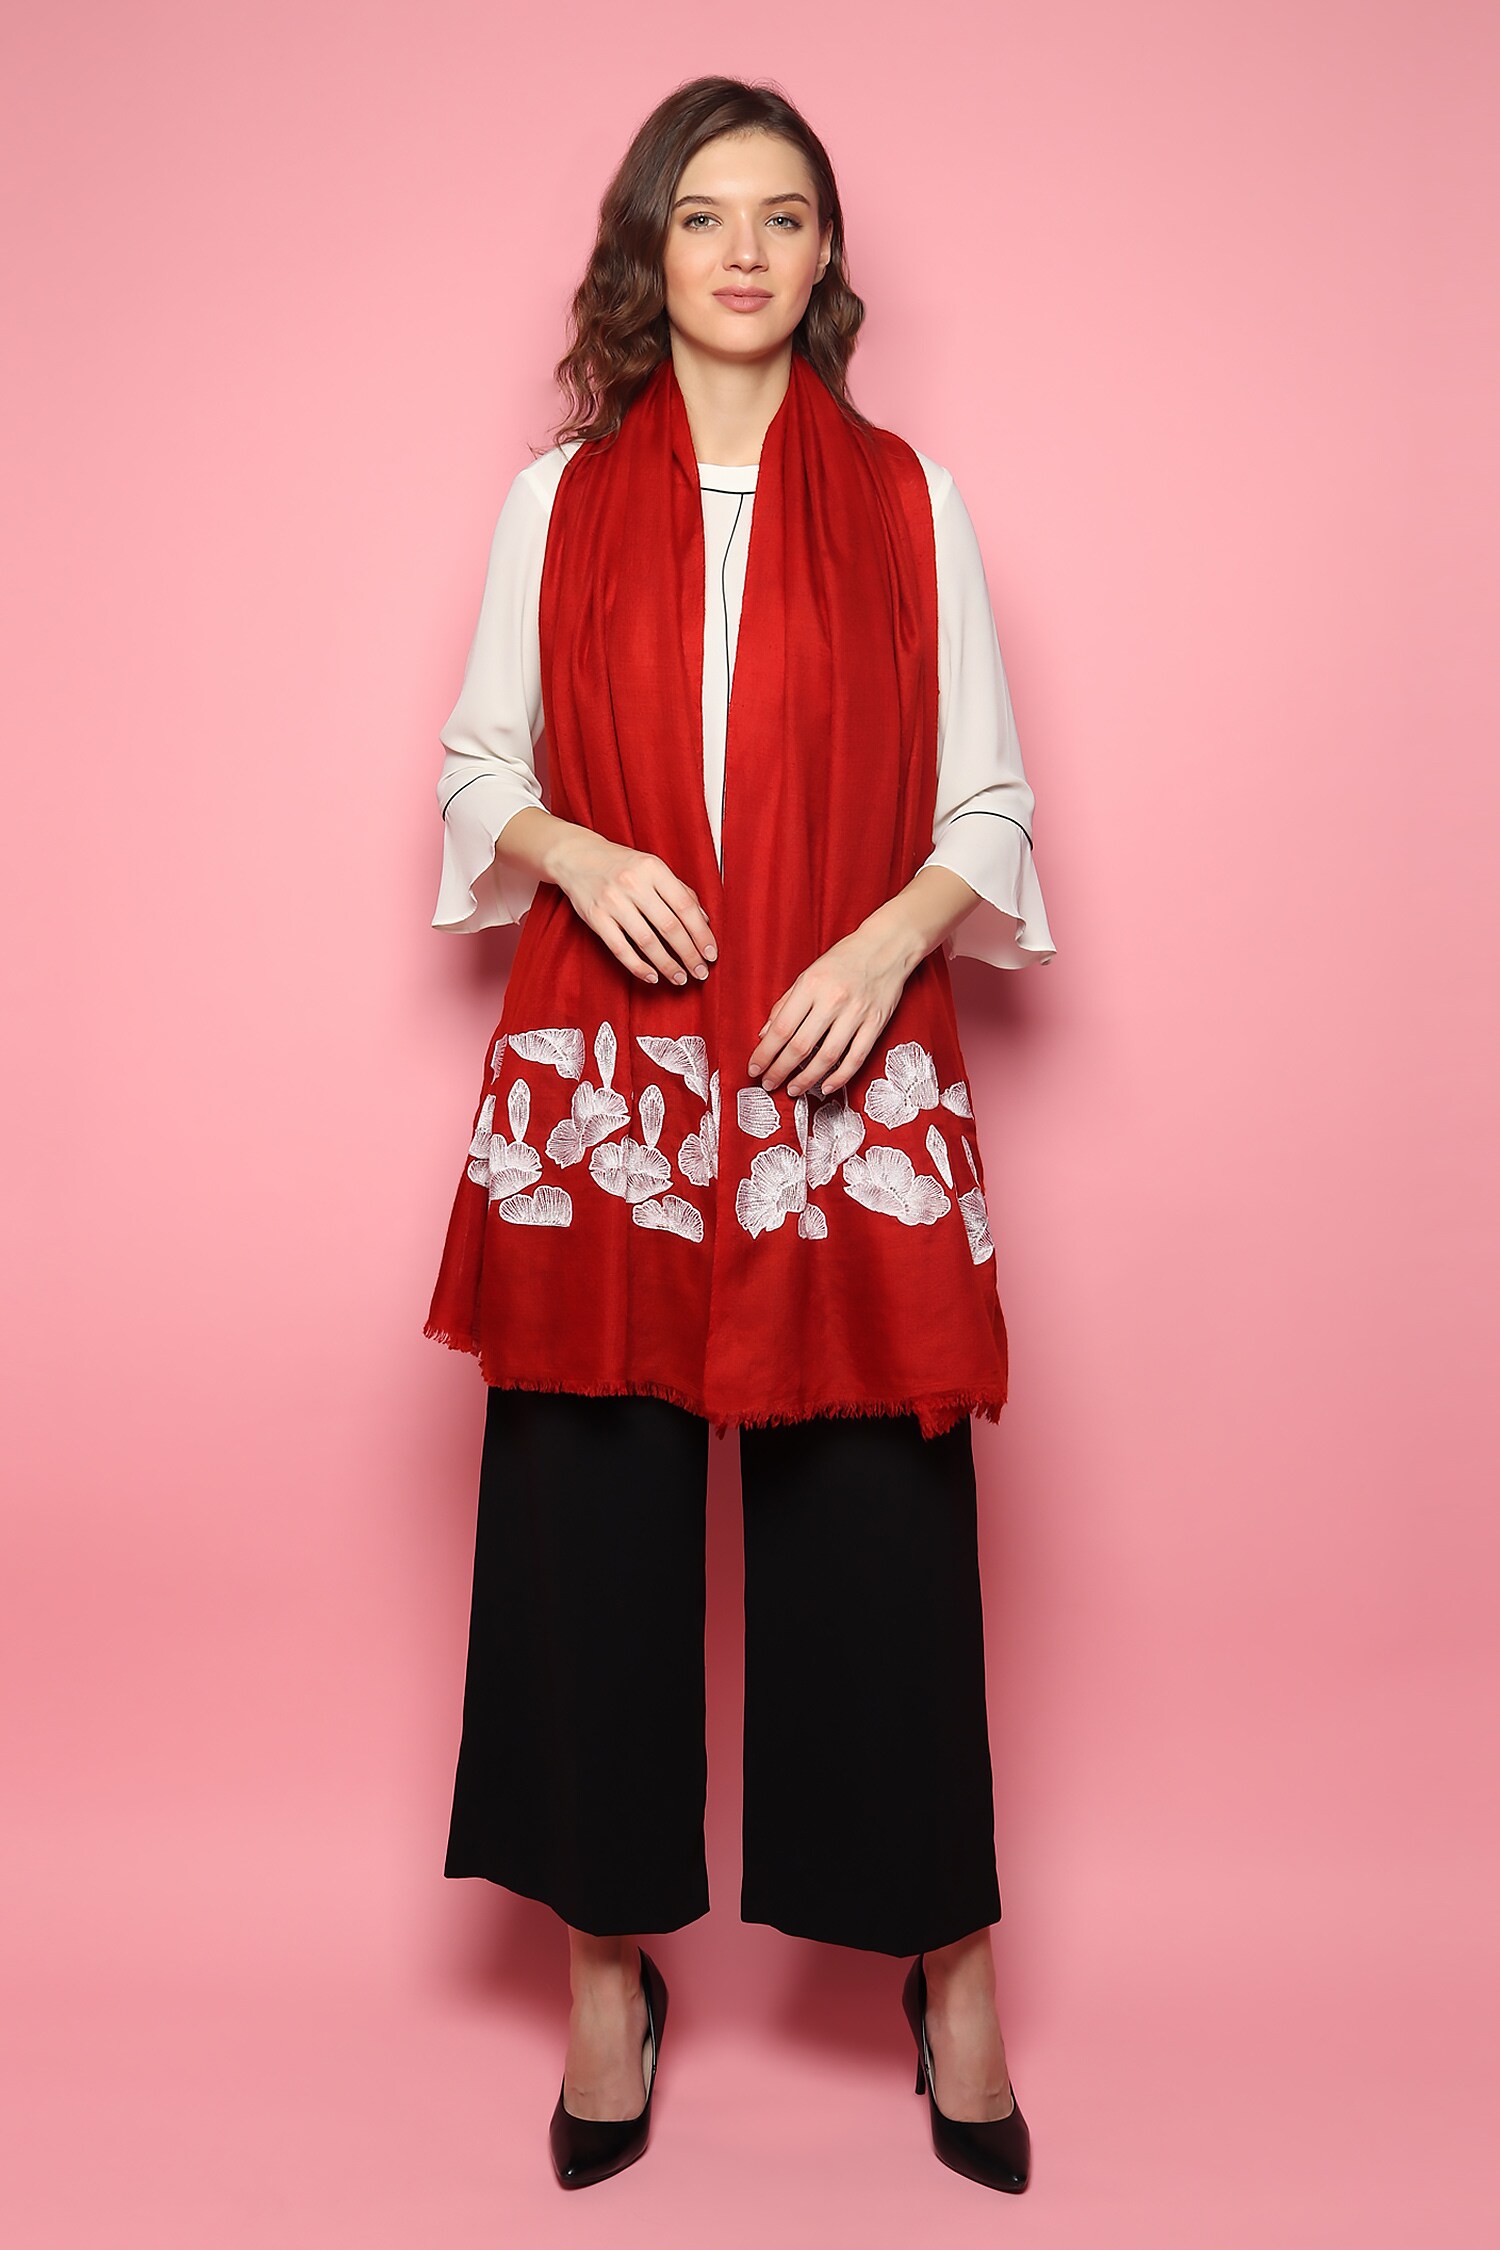 cashmere shawls, pashmina shawl in kashmir, kashmir shawl online – modarta